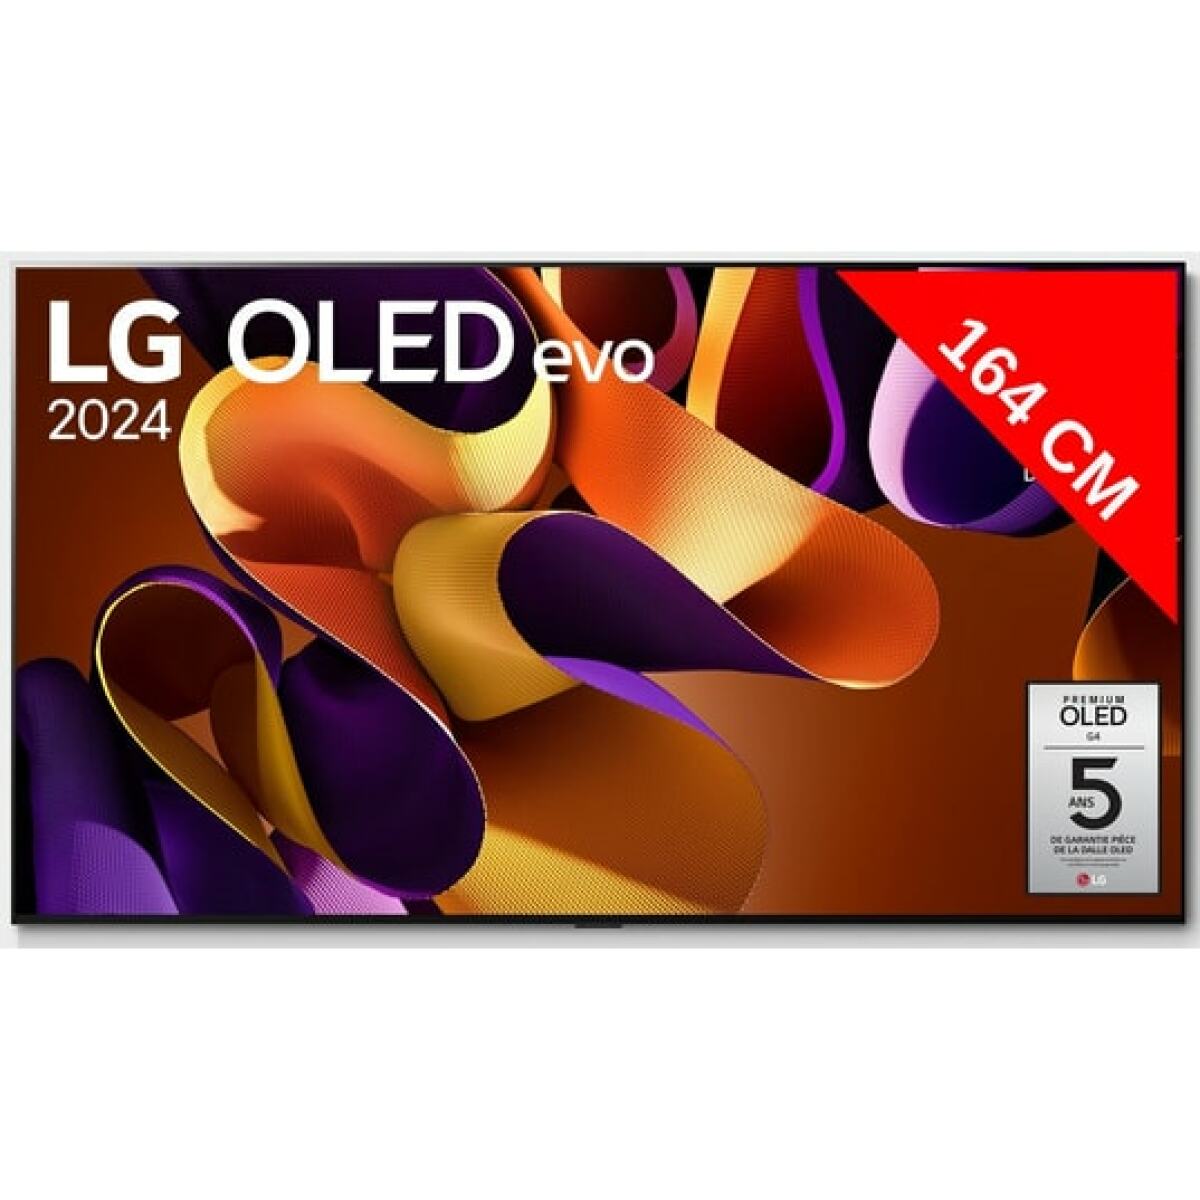 LG TV OLED 4K 164 cm OLED65G4 evo 2024